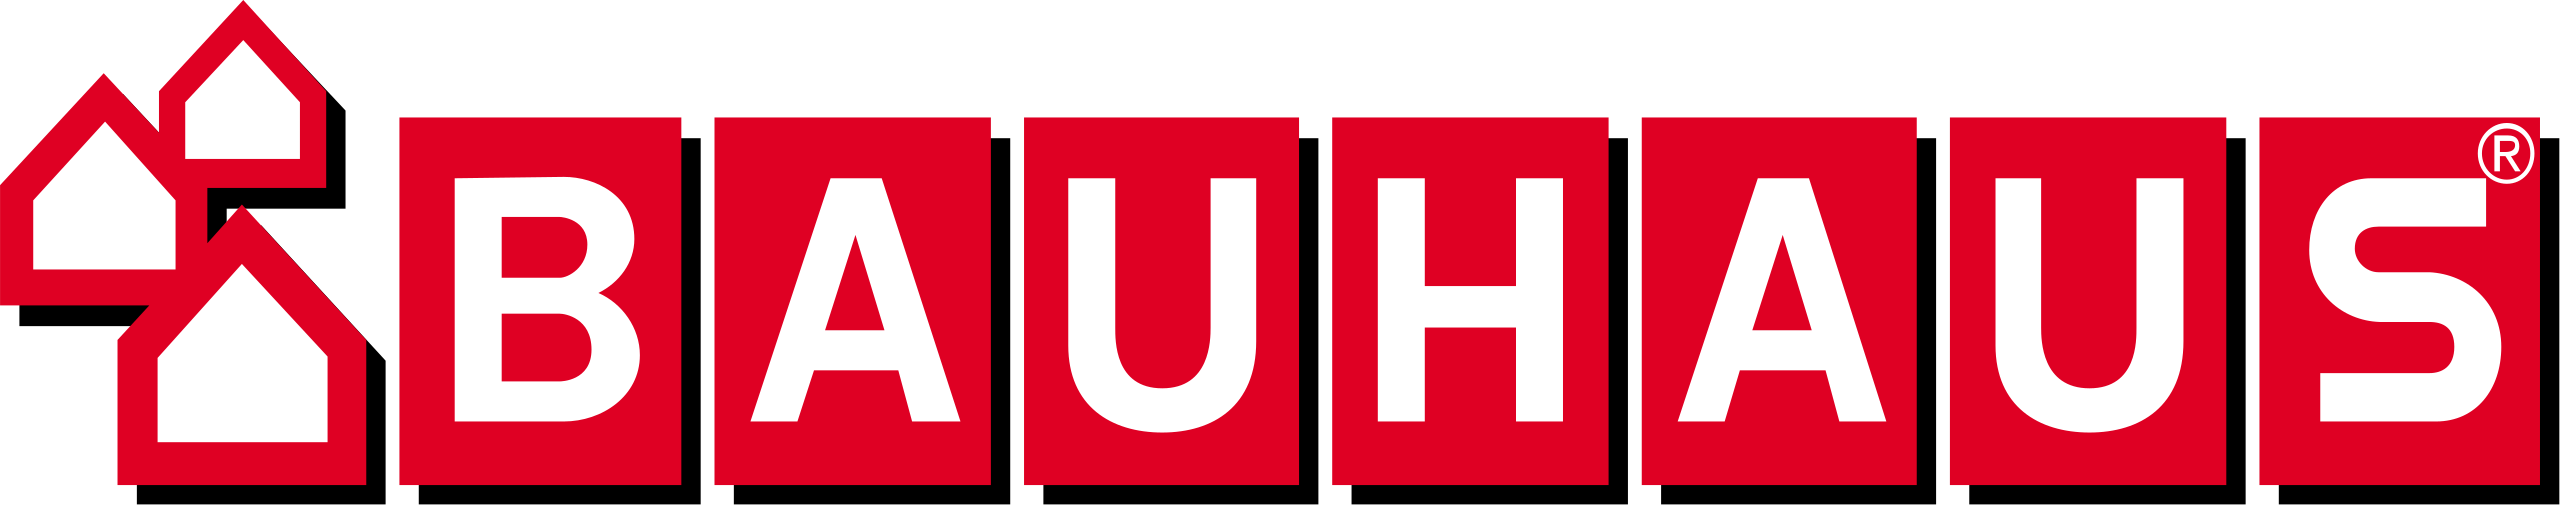 Bauhaus_logo.svg